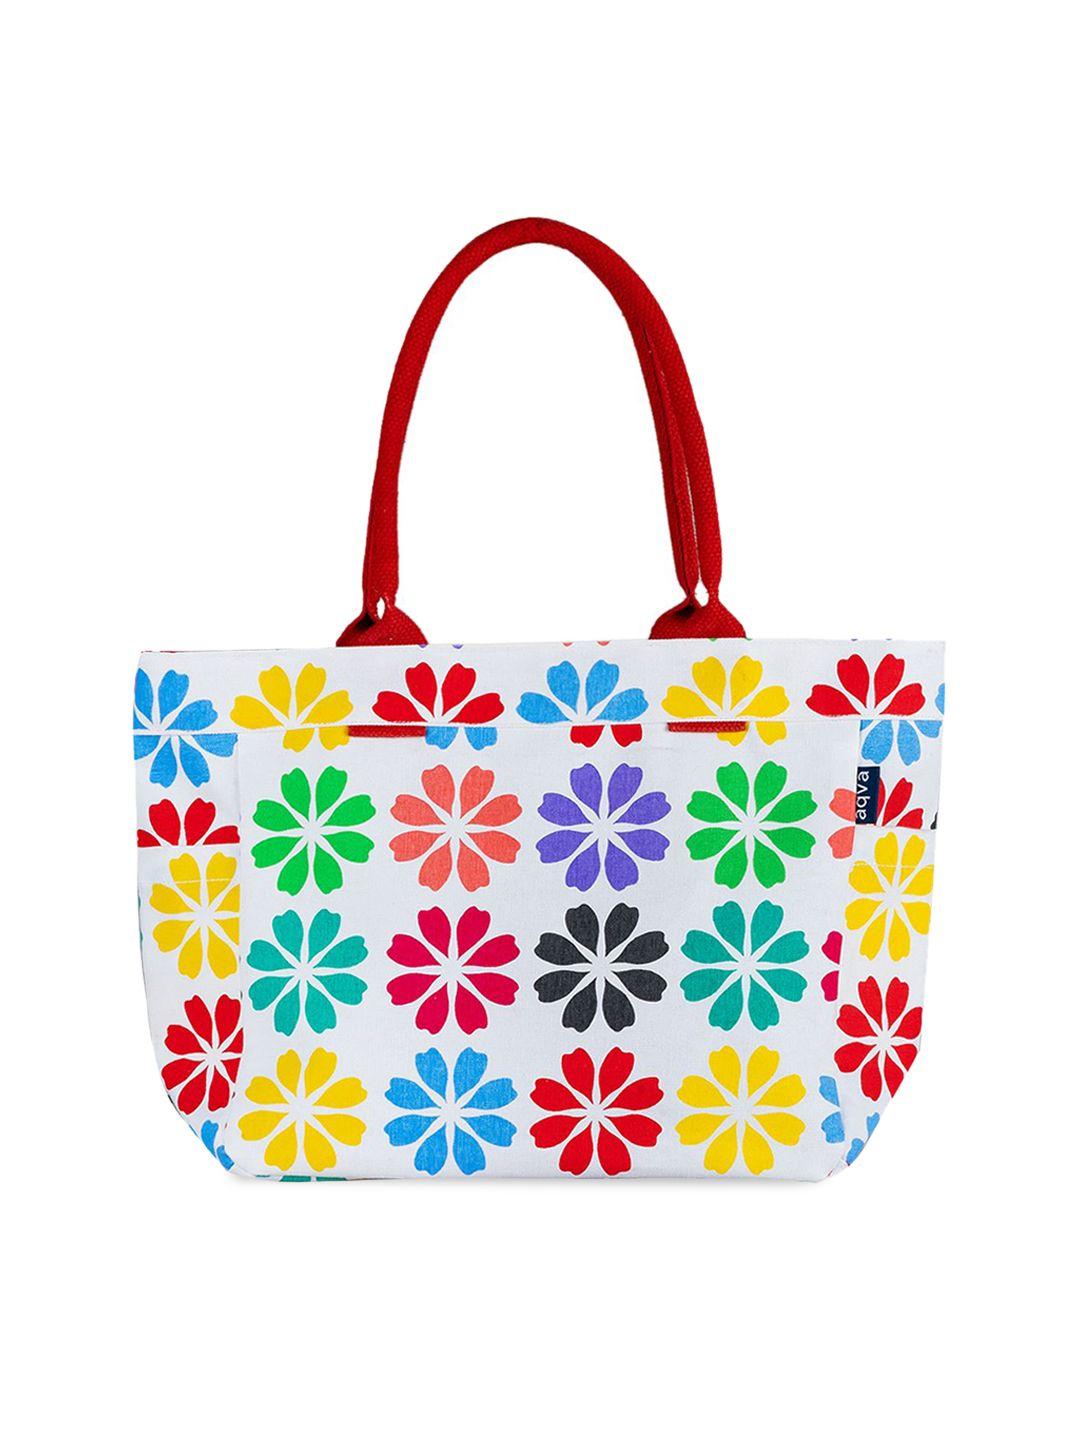 aqva floral printed shopper tote bag